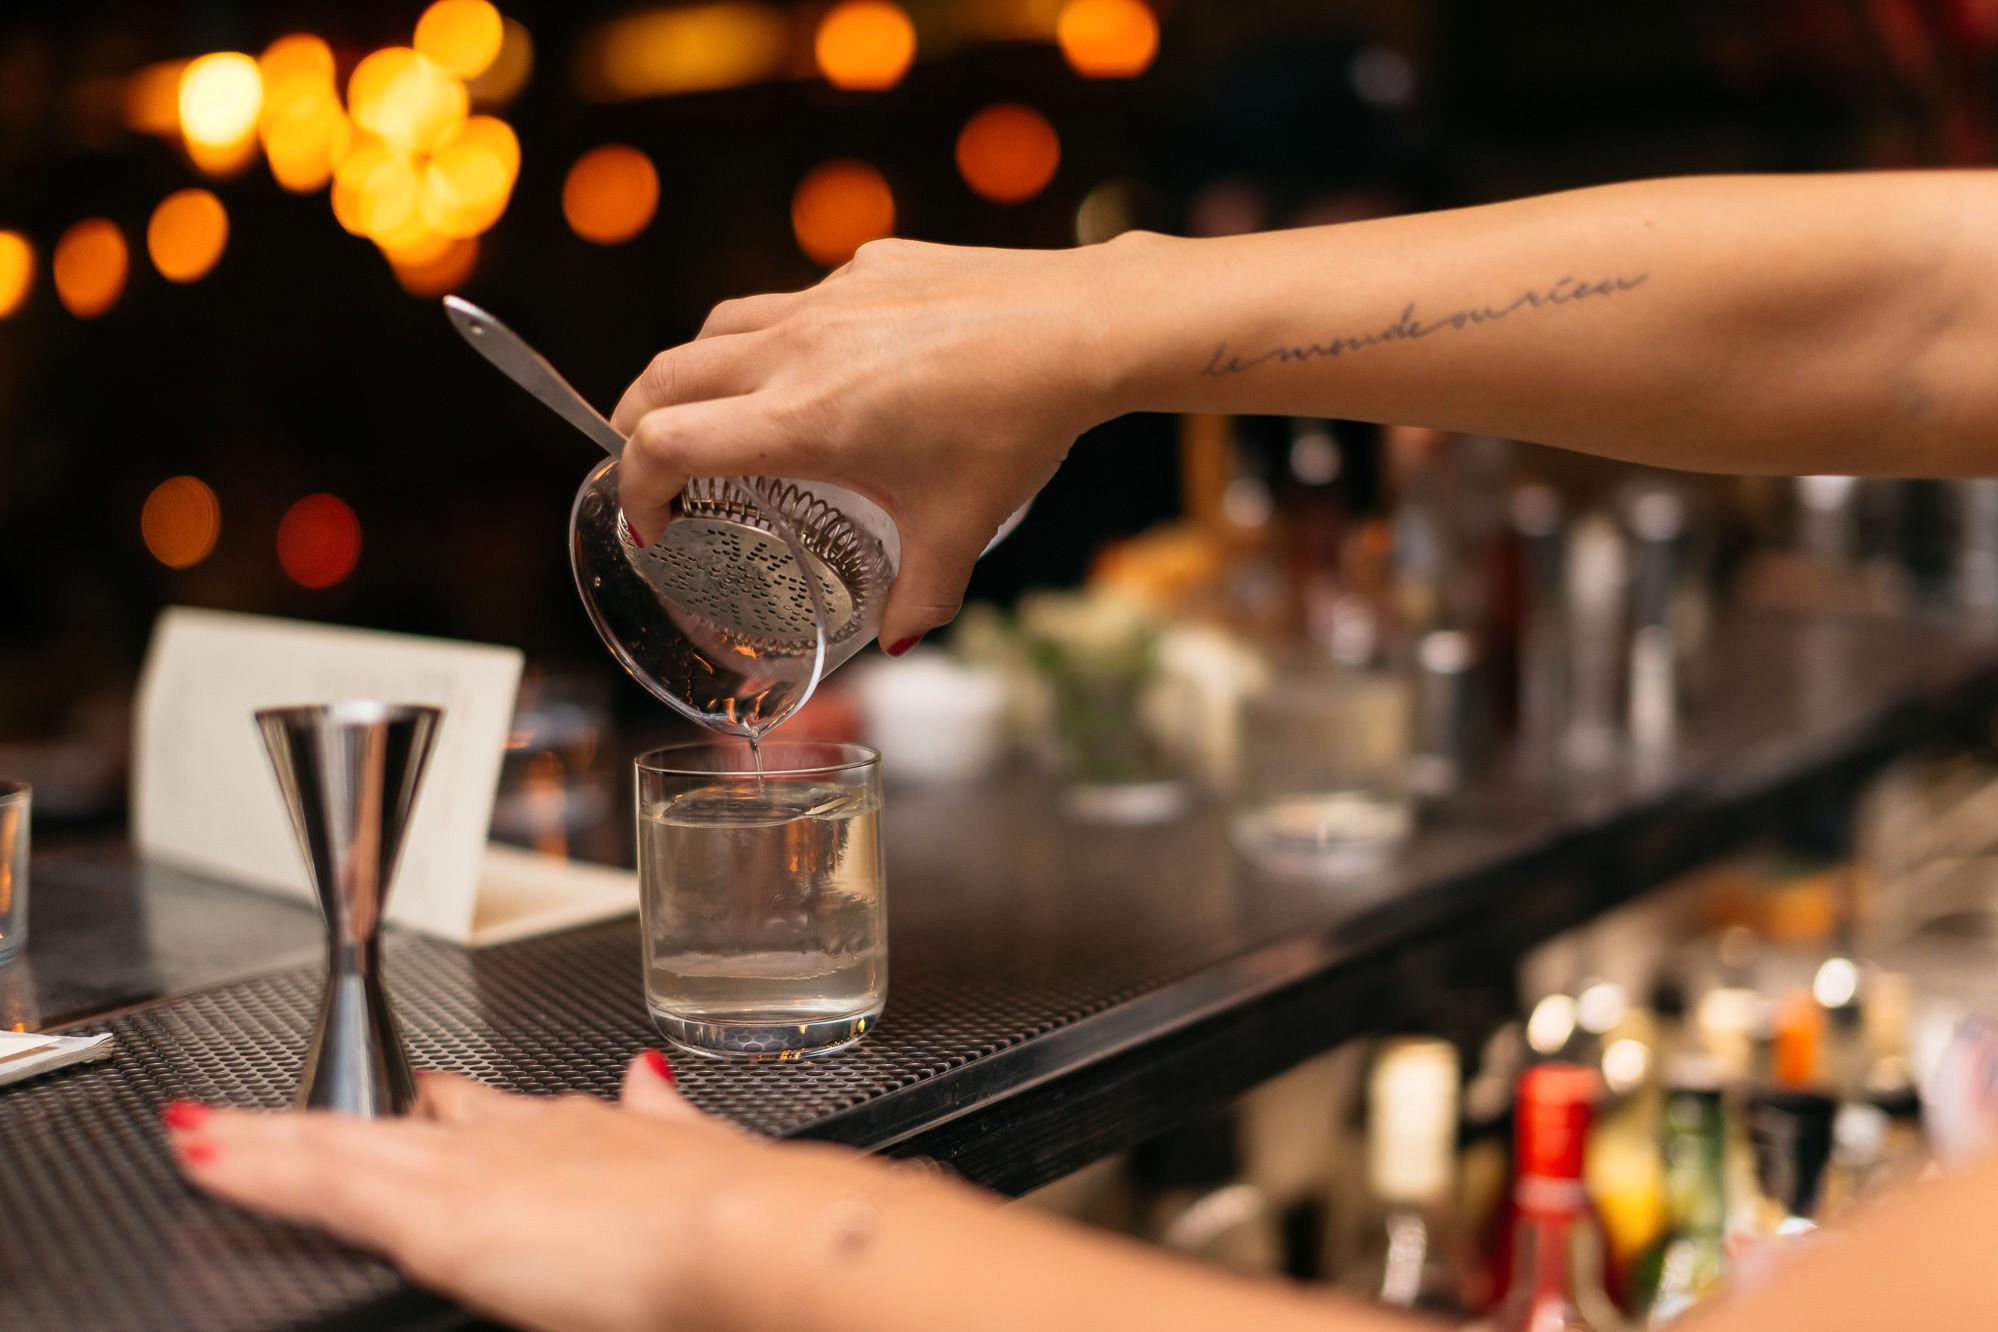 FAVORITT: Bartender Monica Berg liker spesielt godt drinken Palo Santo. Foto: Fahrenheit